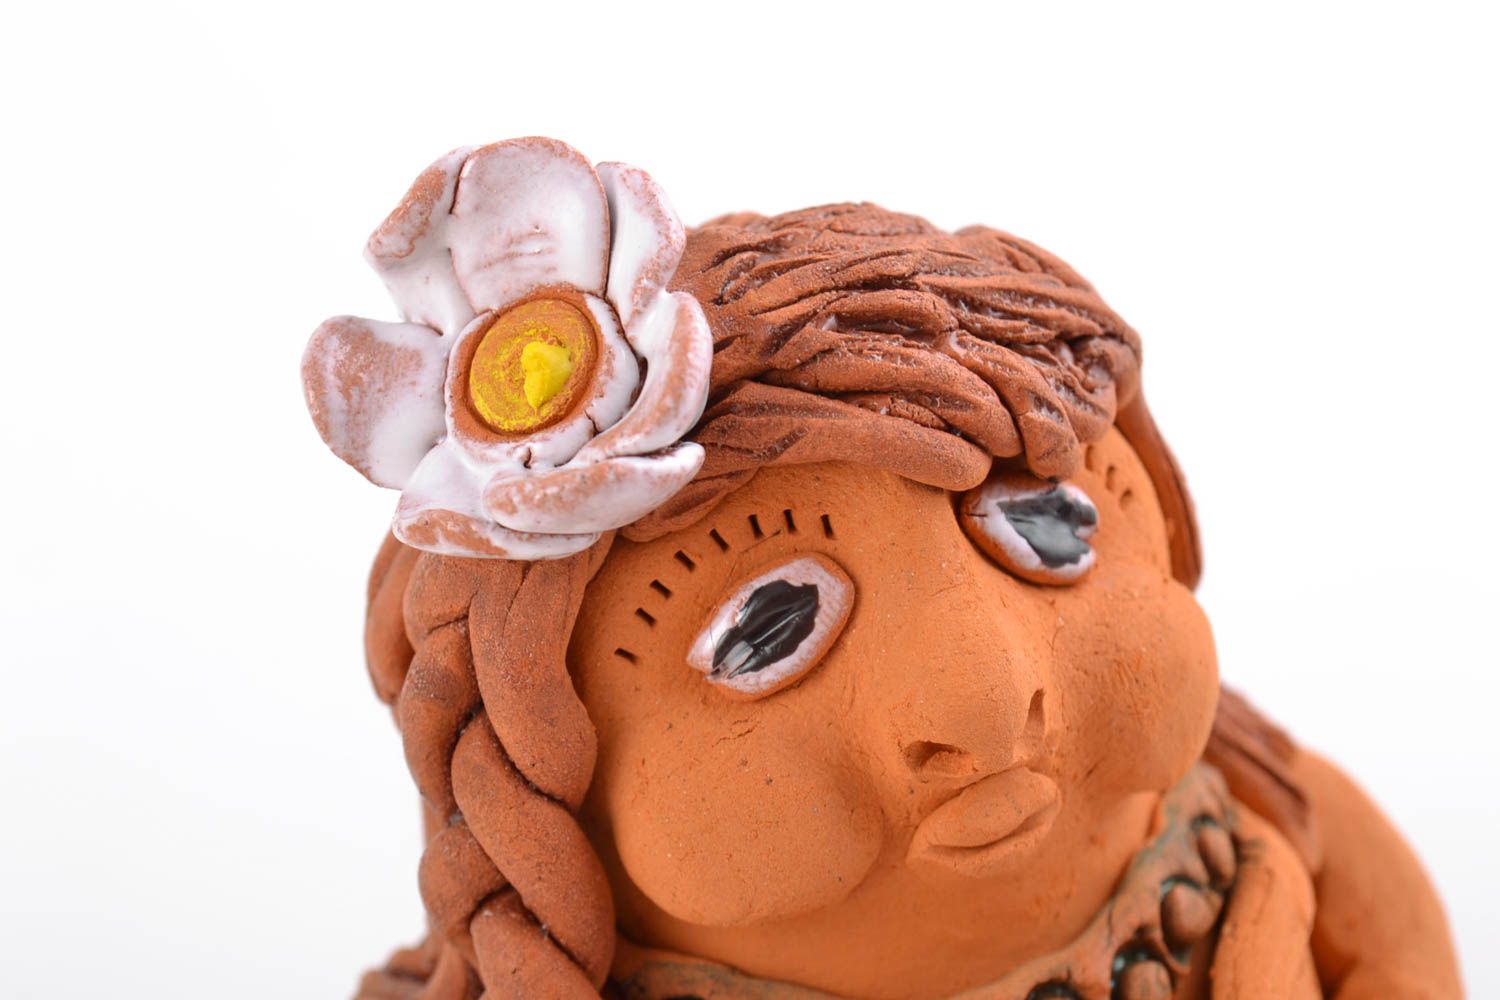 Figurina donna fatta a mano in ceramica statuina souvenir di terracotta foto 3